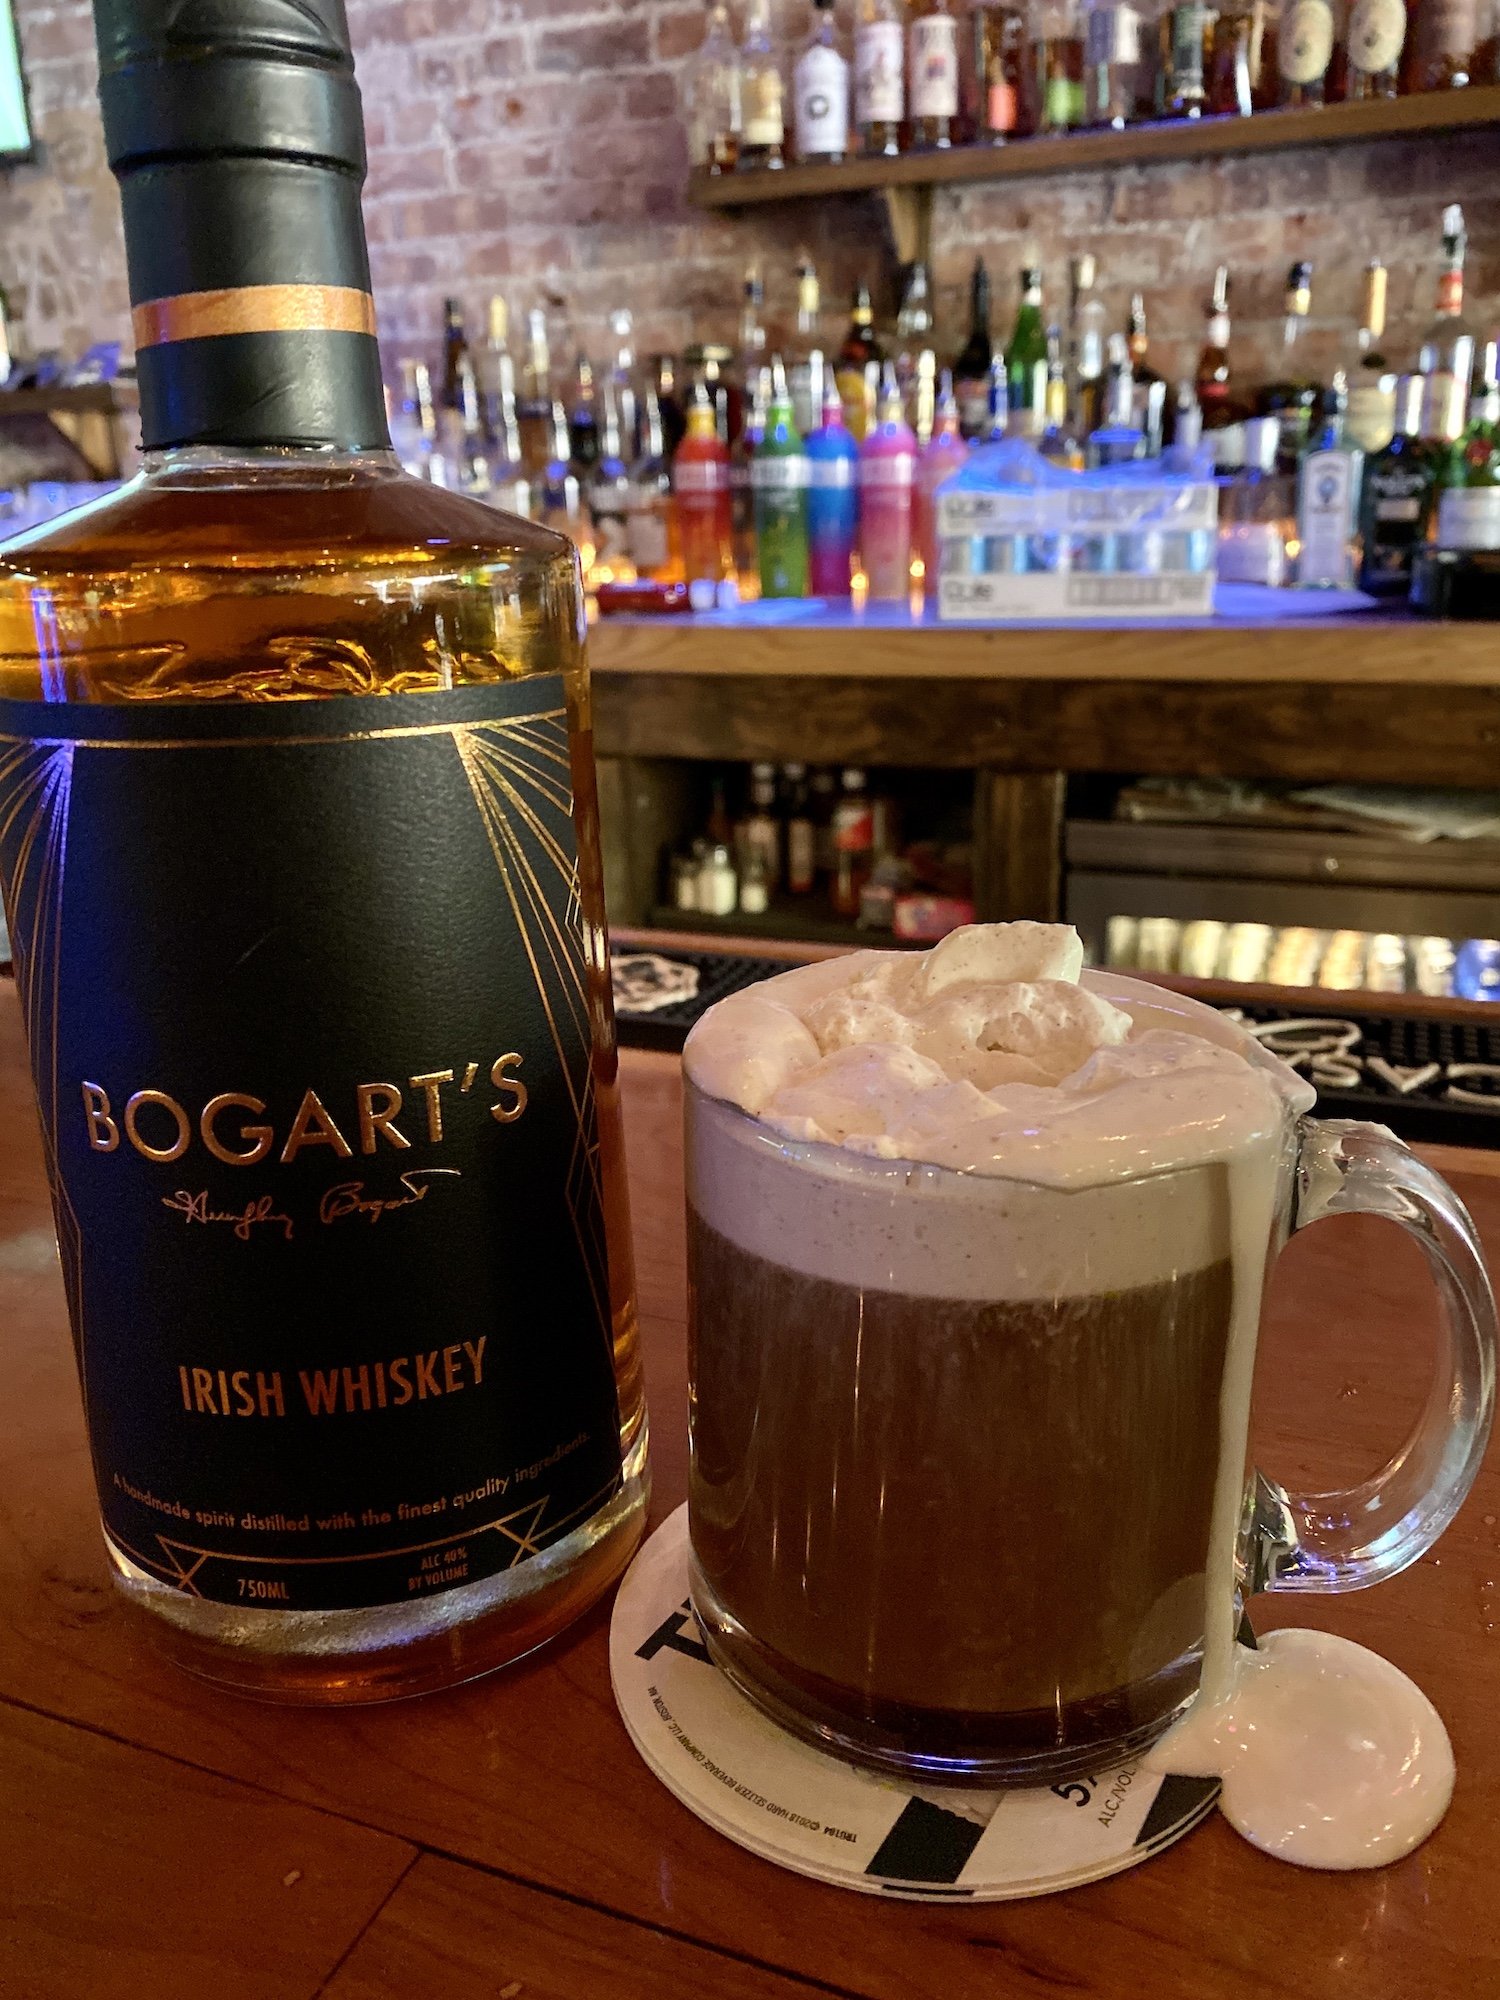 Bogart's Irish Whiskey